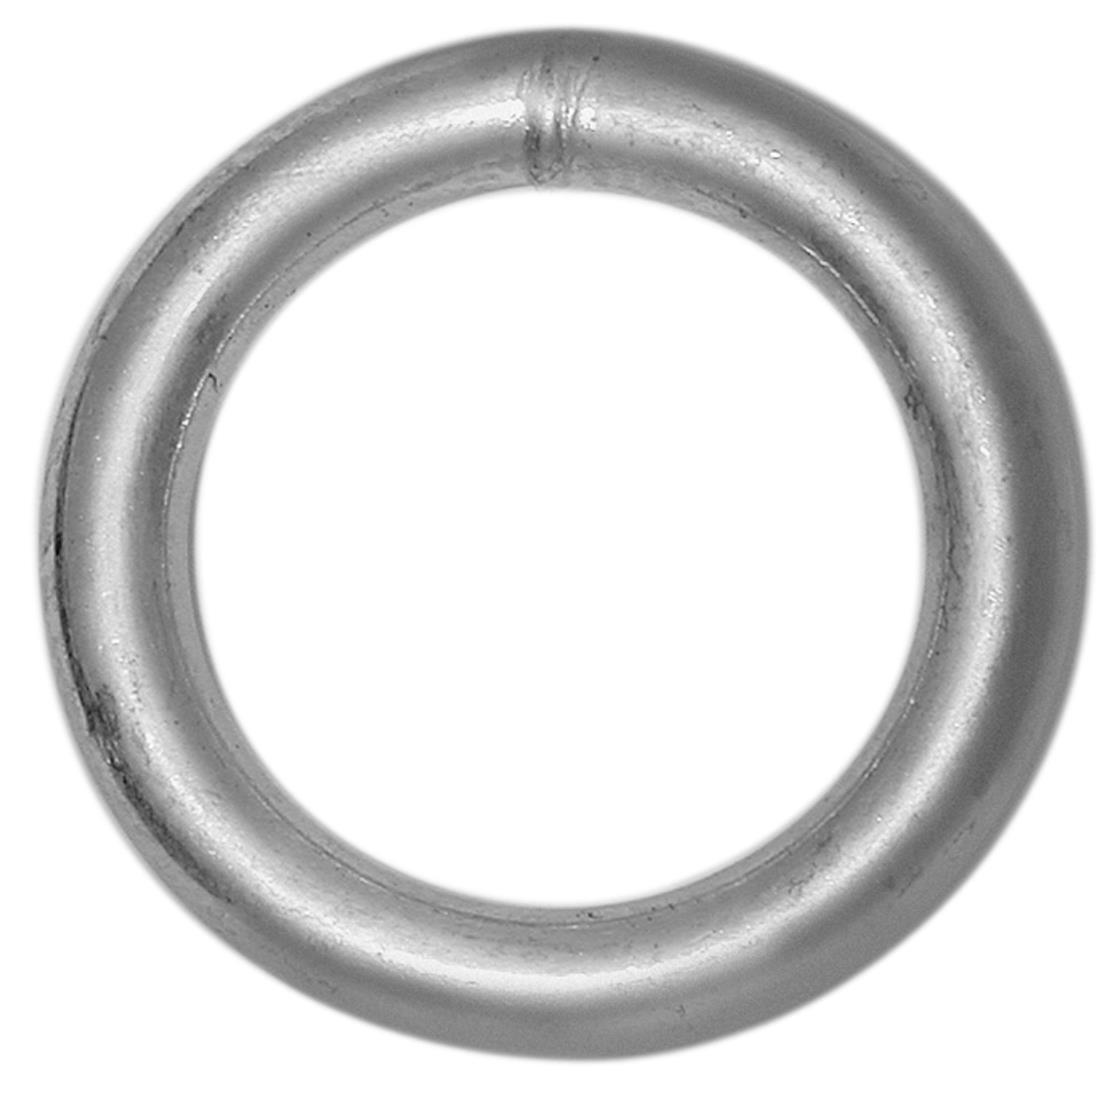 Vormann Ring 40 x 8 mm verzinkt 2 Stk.